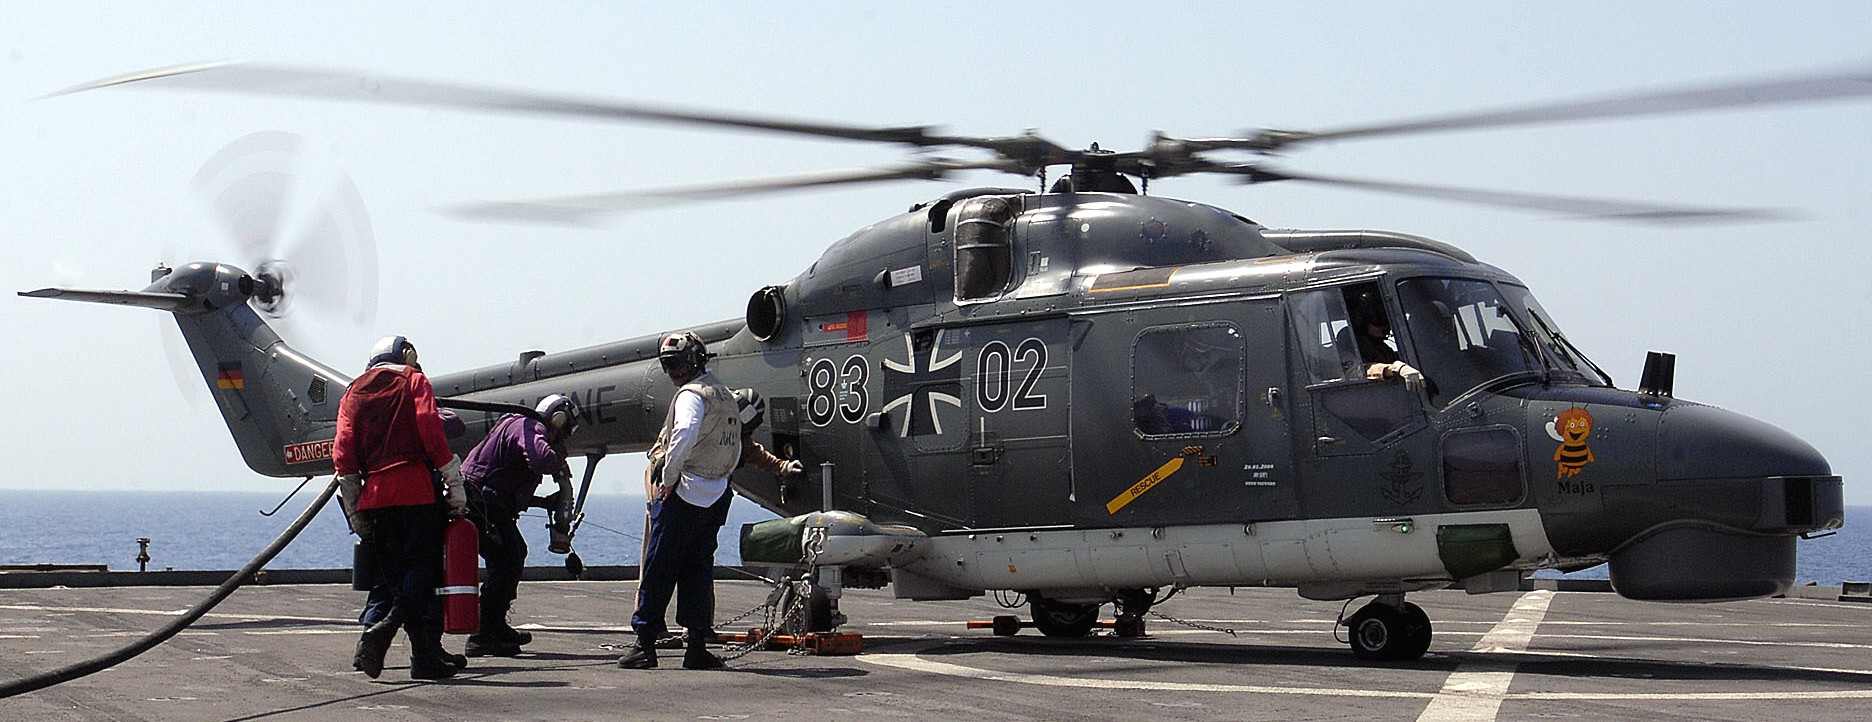 sea lynx mk.88a westland naval helicopter german navy deutsche marine 101